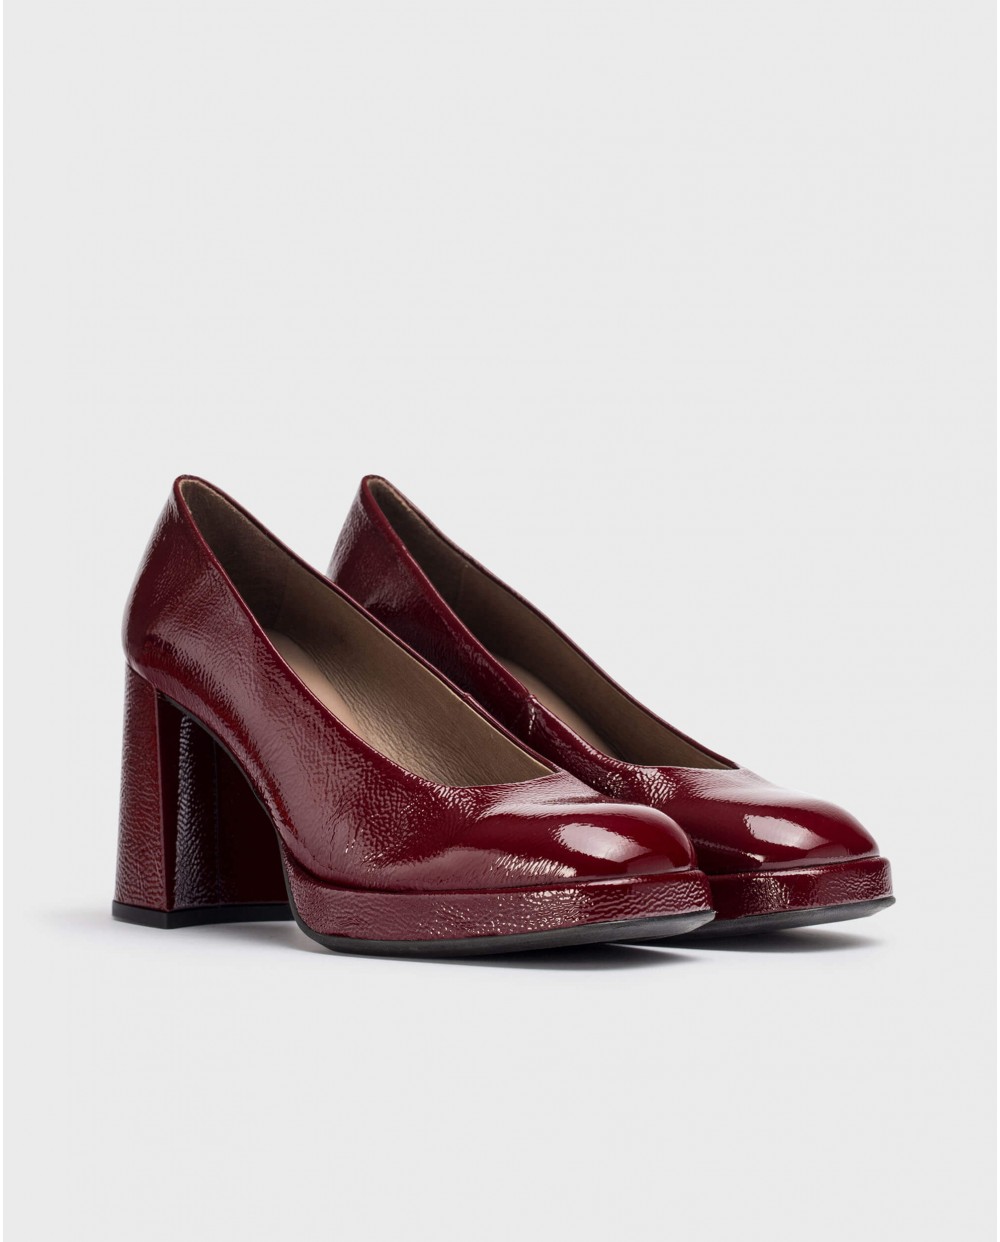 Wonders-Heels-Burgundy CAPTAIN high-heeled shoe